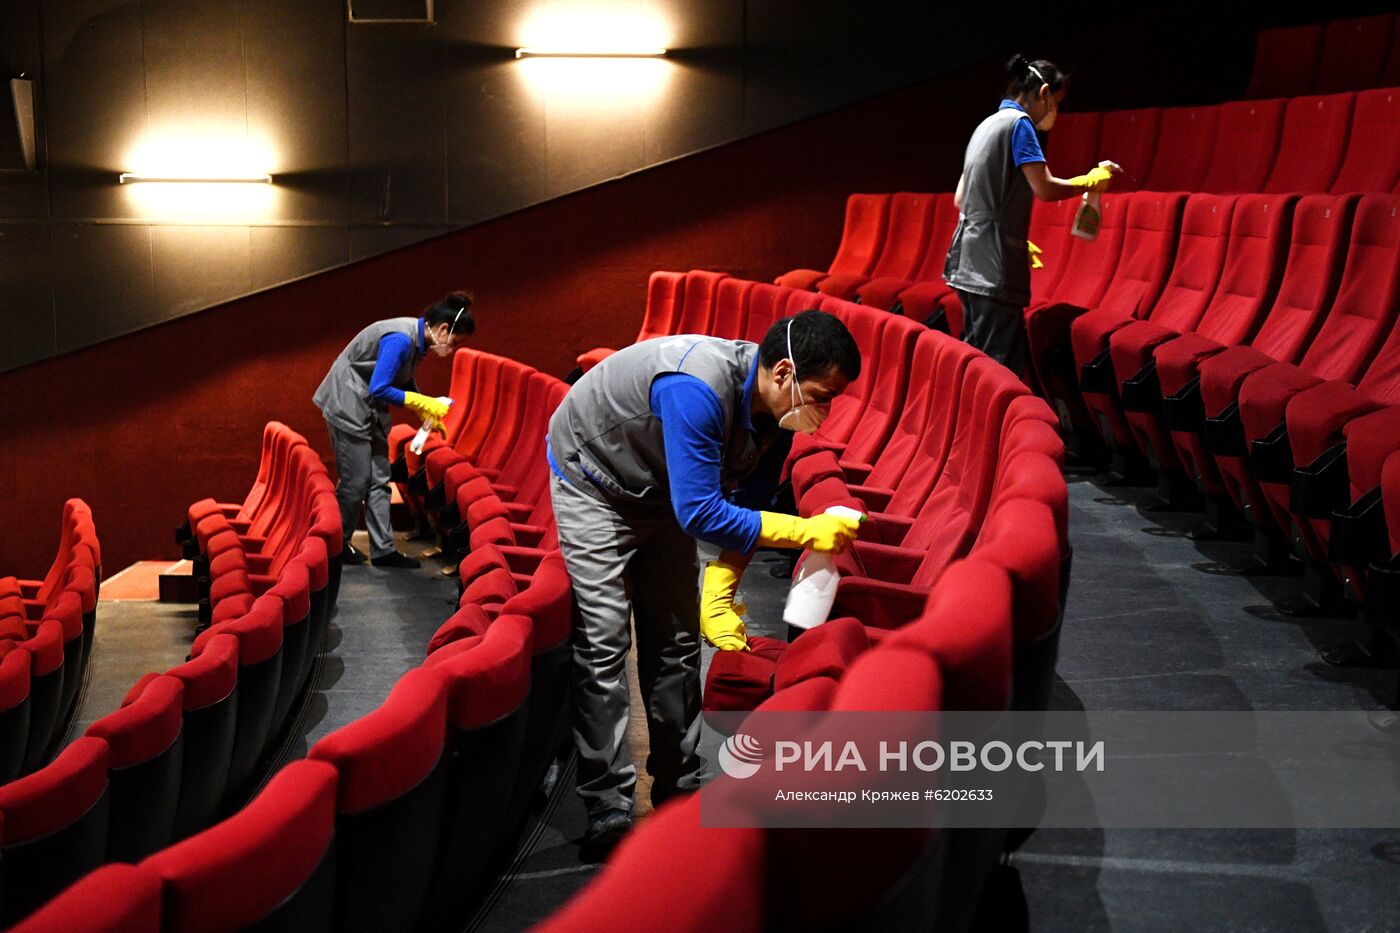 Меры профилактики коронавируса в кинотеатре "Победа" в Новосибирске